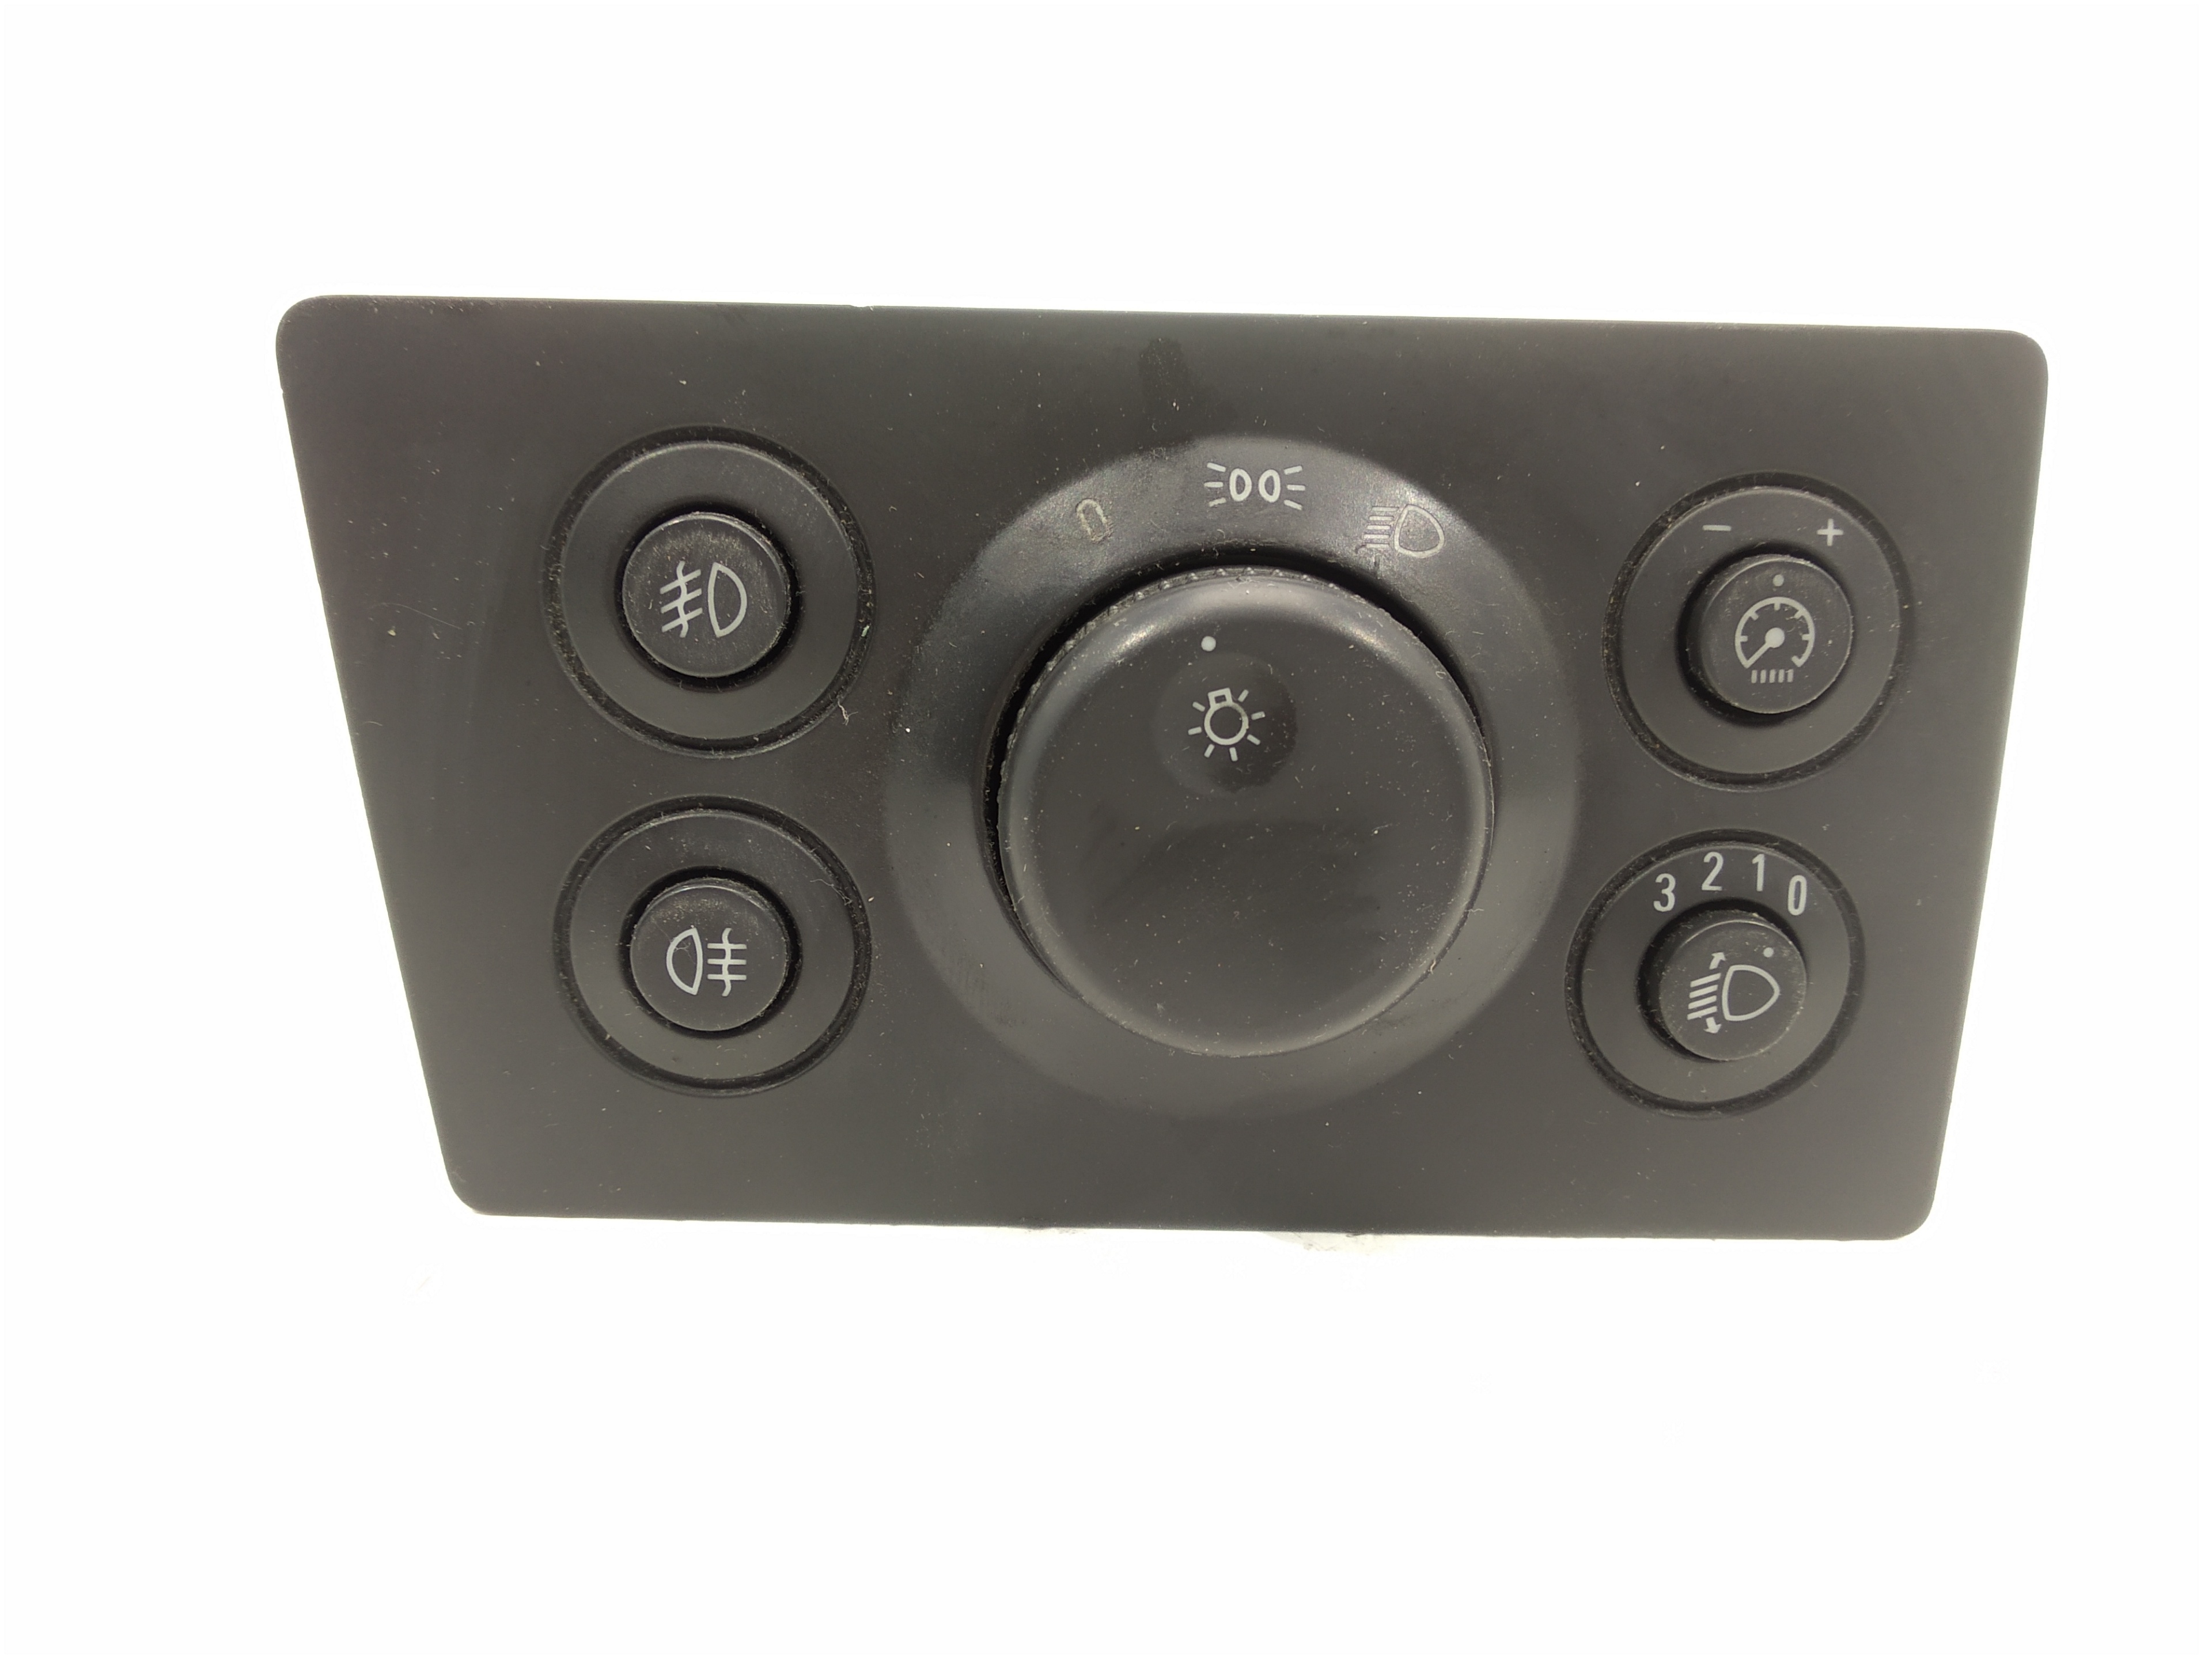 OPEL Zafira B (2005-2010) Headlight Switch Control Unit 13205865 25298413